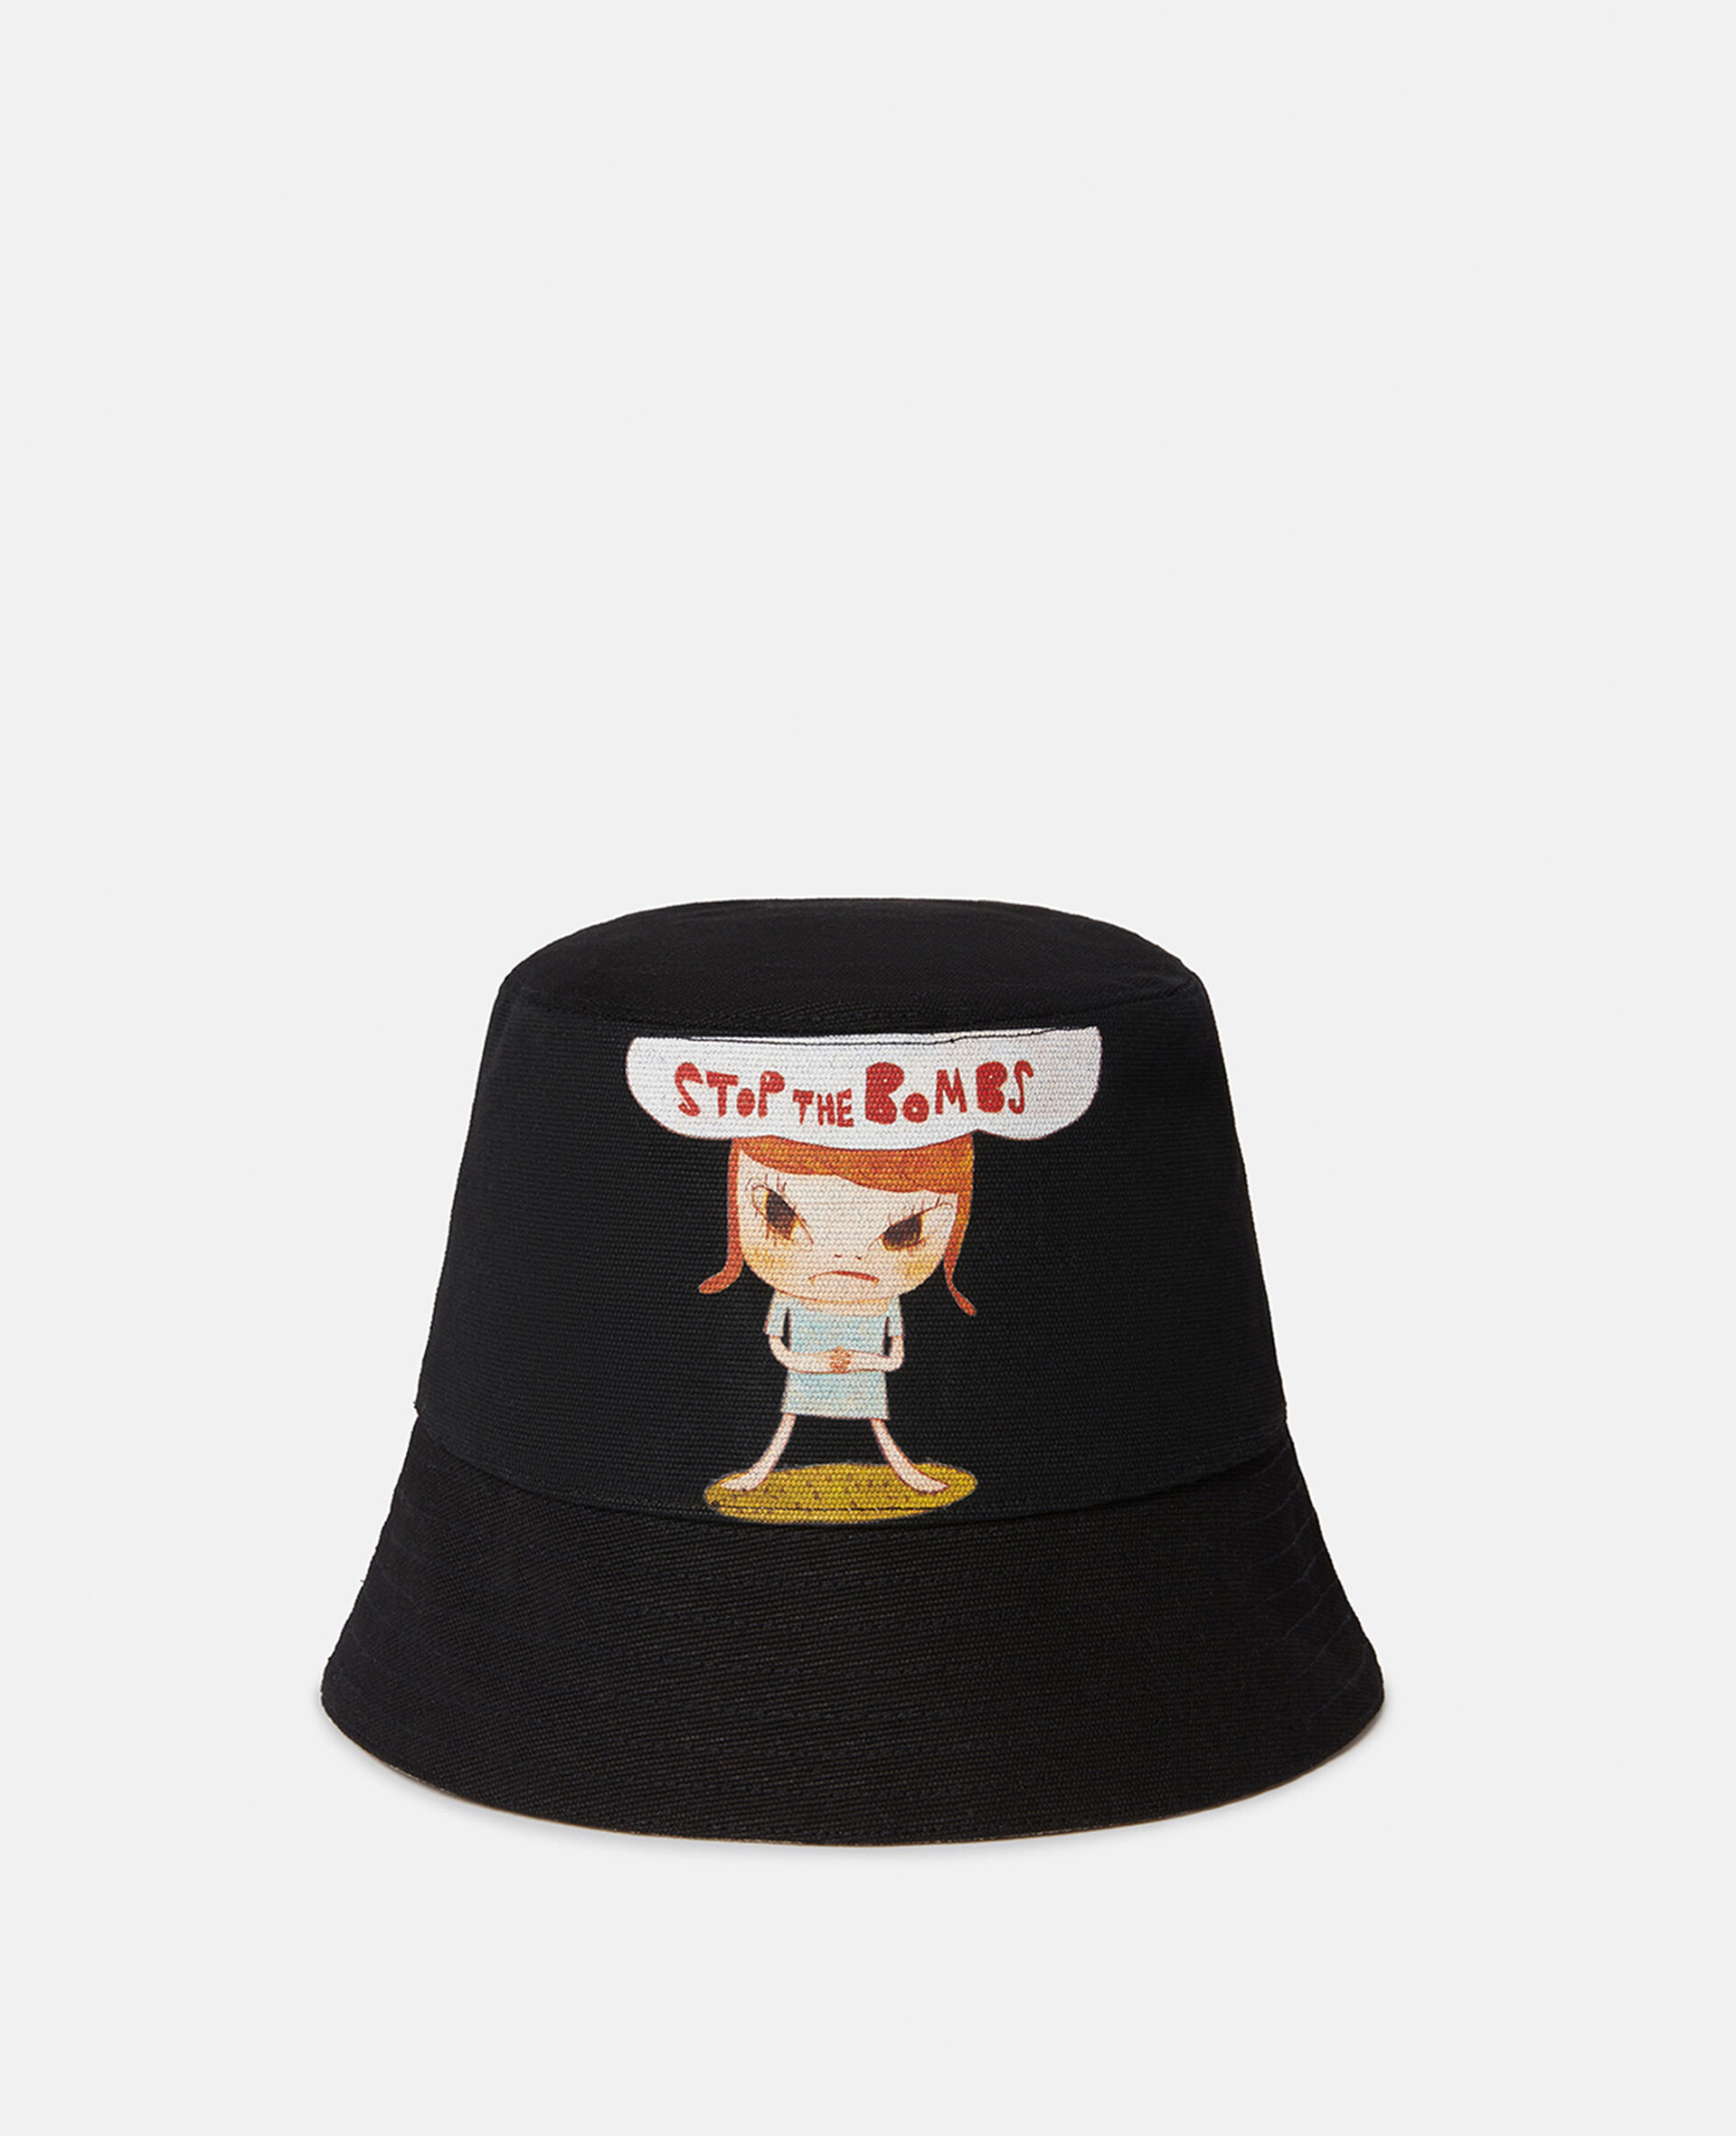 Sinister Child Print Bucket Hat-Black-large image number 0